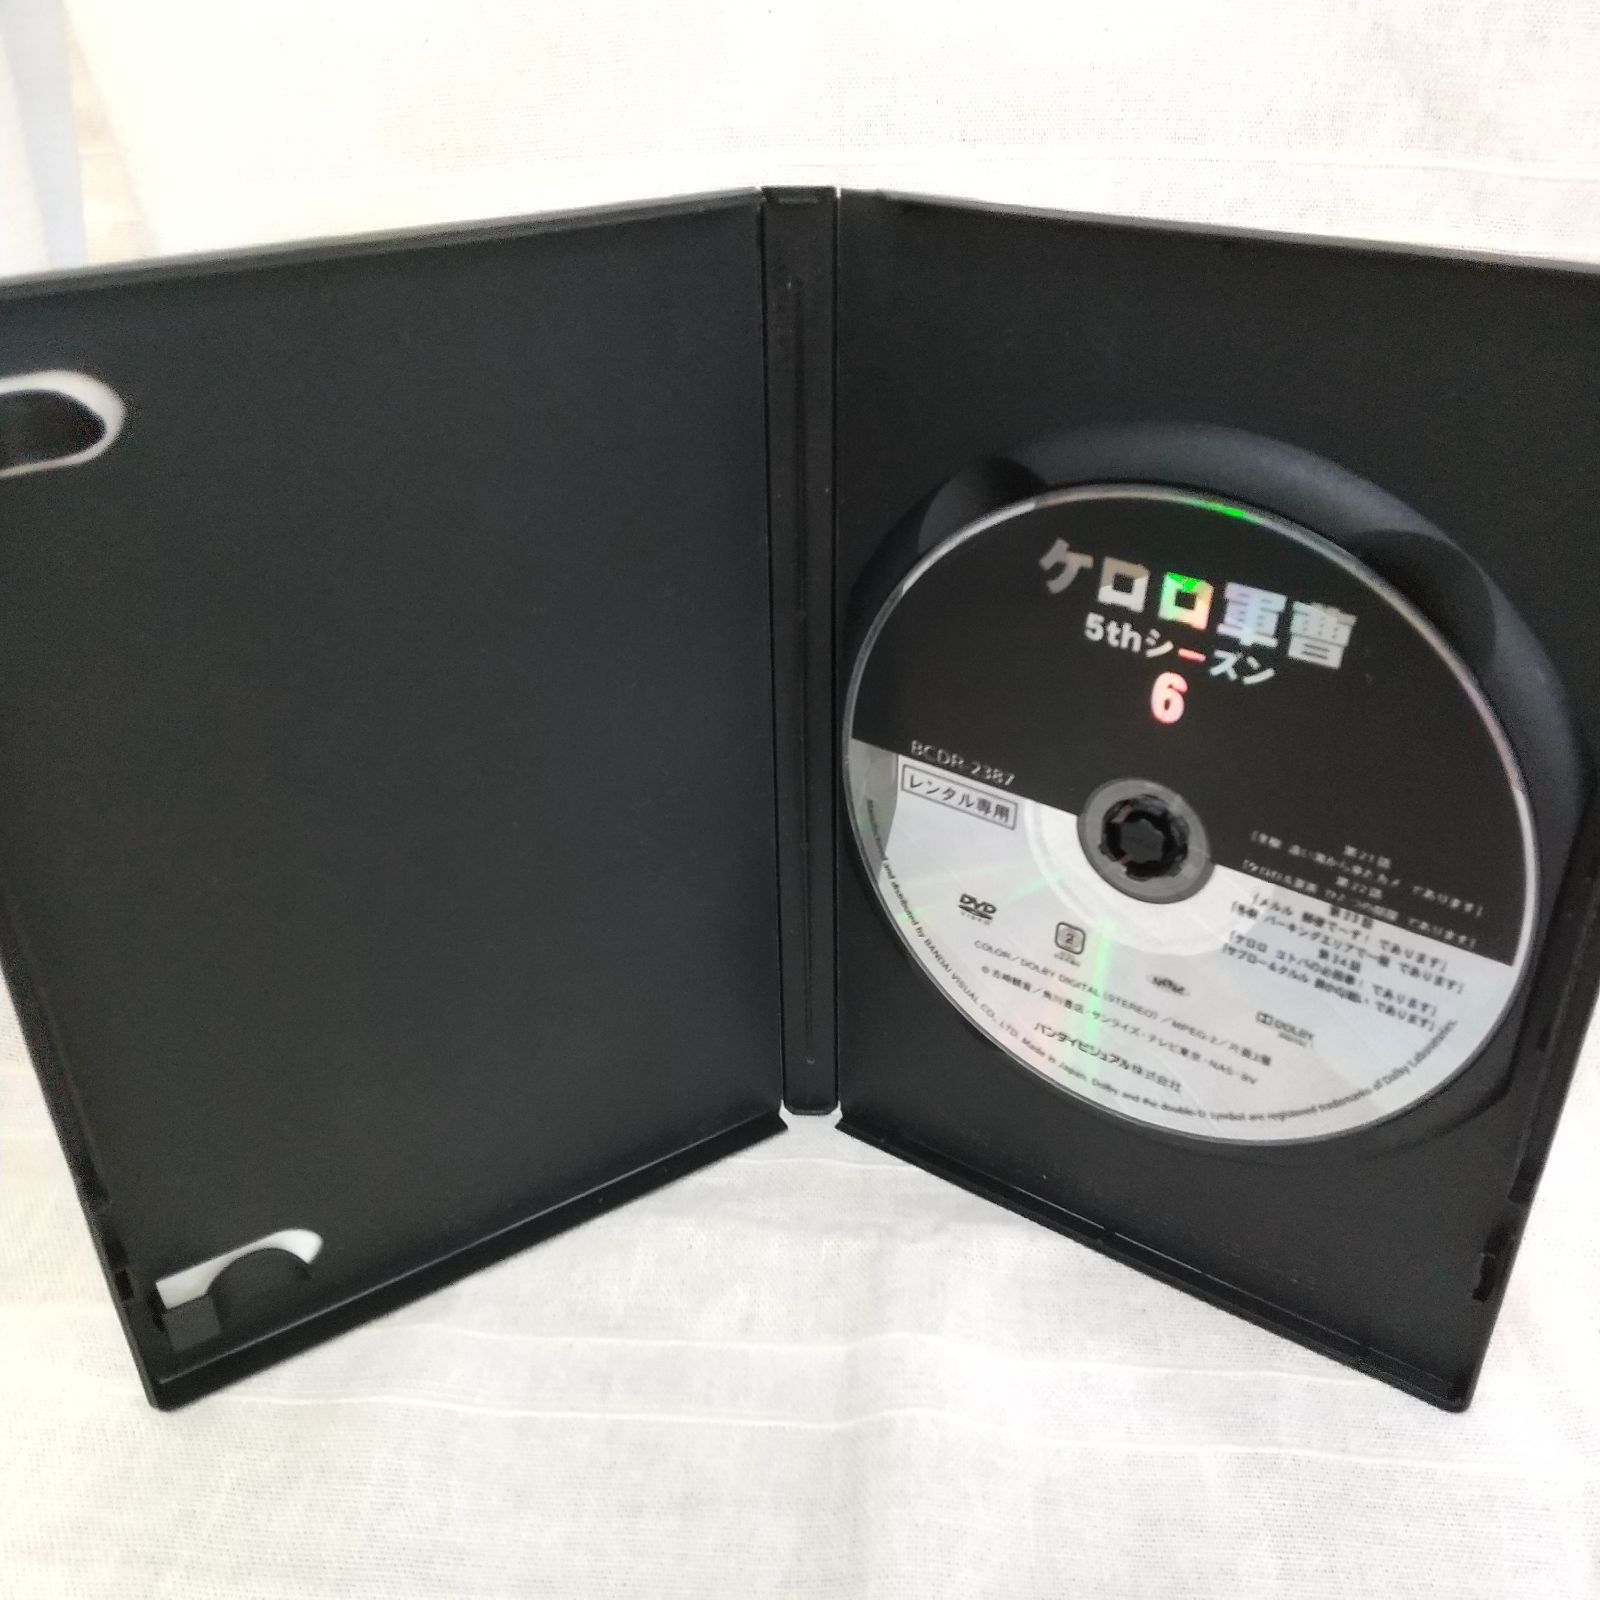 ケロロ軍曹 5thシーズン Vol.6 レンタル専用 中古 DVD ケース付き - メルカリ